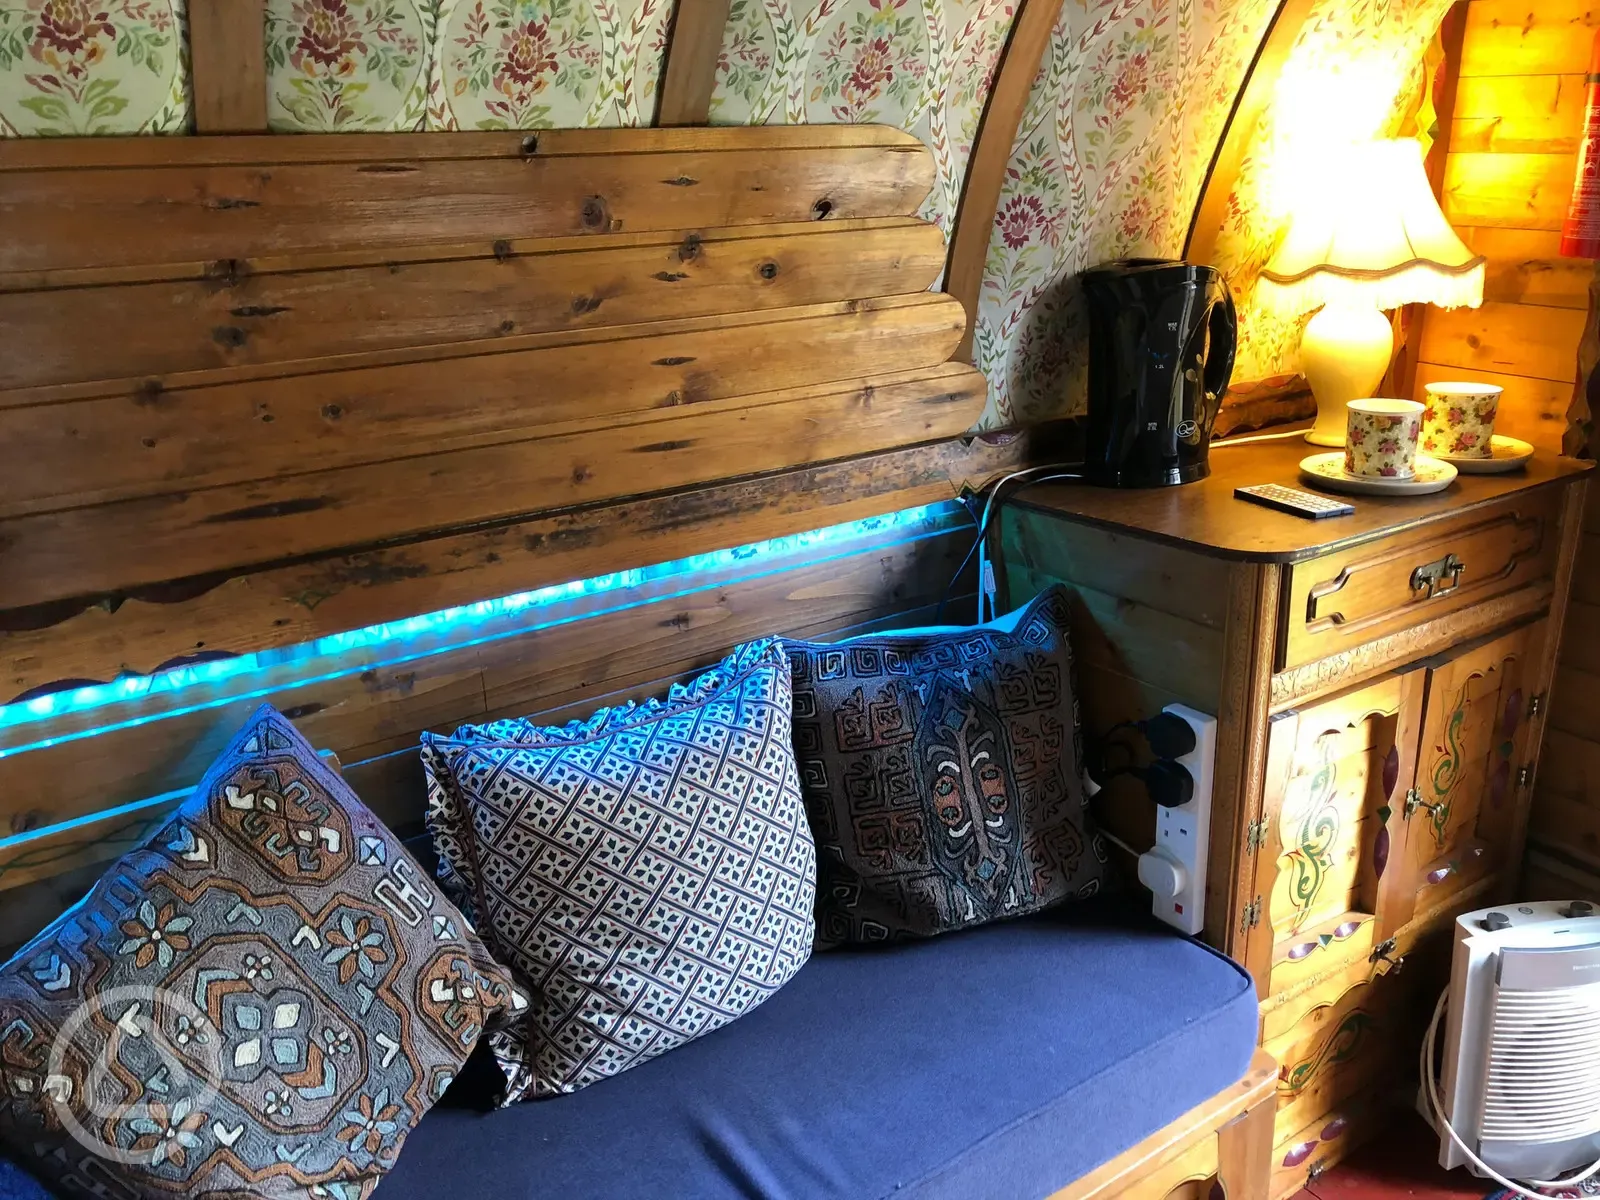 Spare bed in gypsy caravan